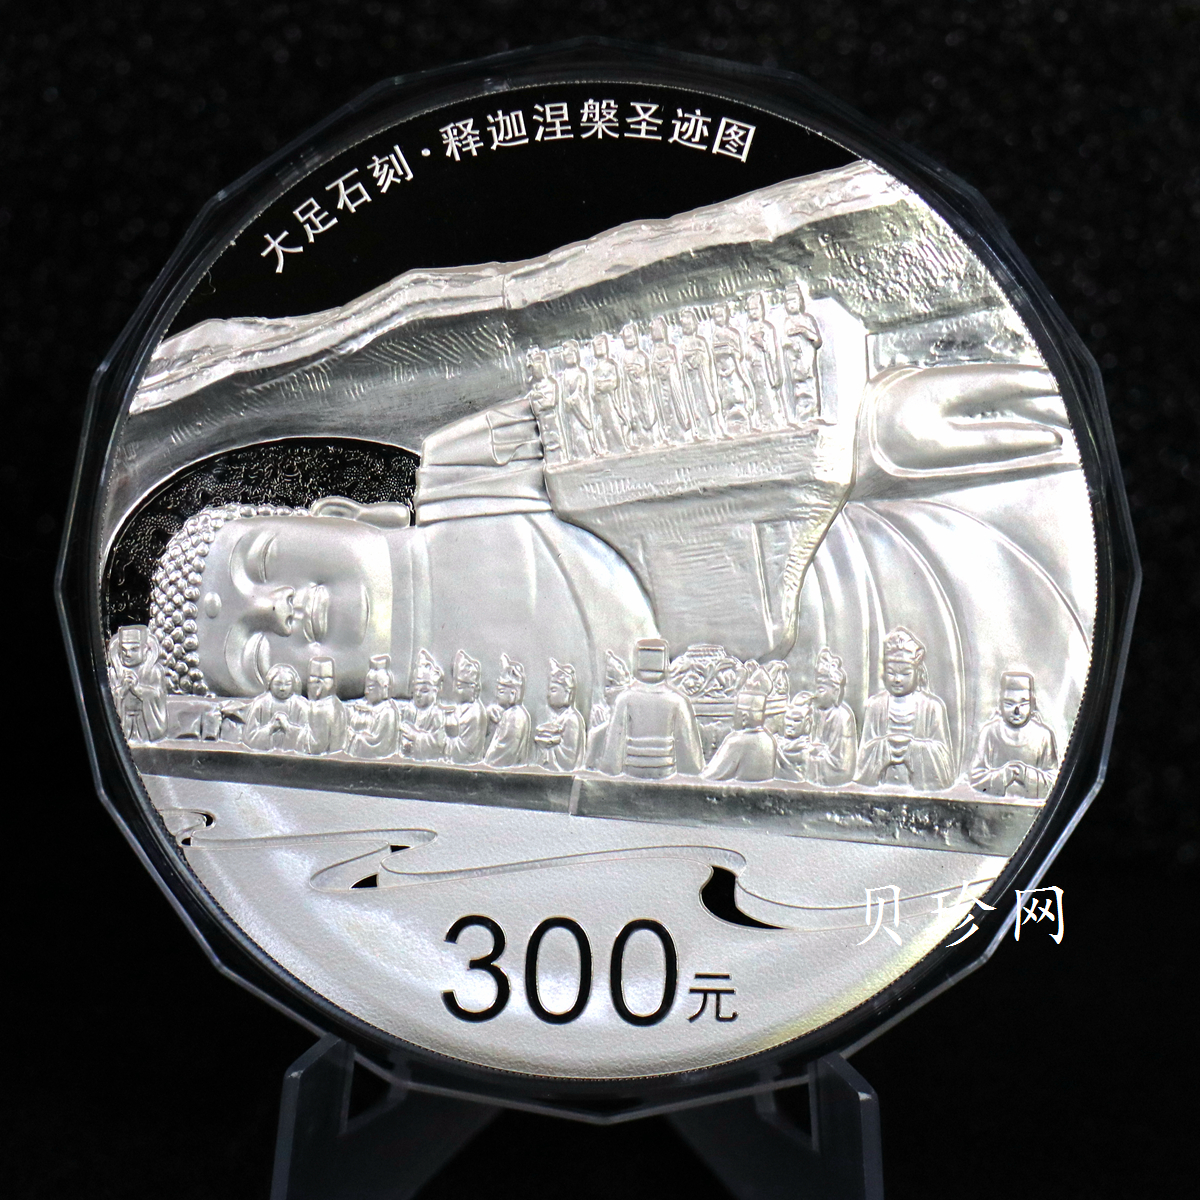 【160603】2016年世界遗产-大足石刻1公斤精制银币